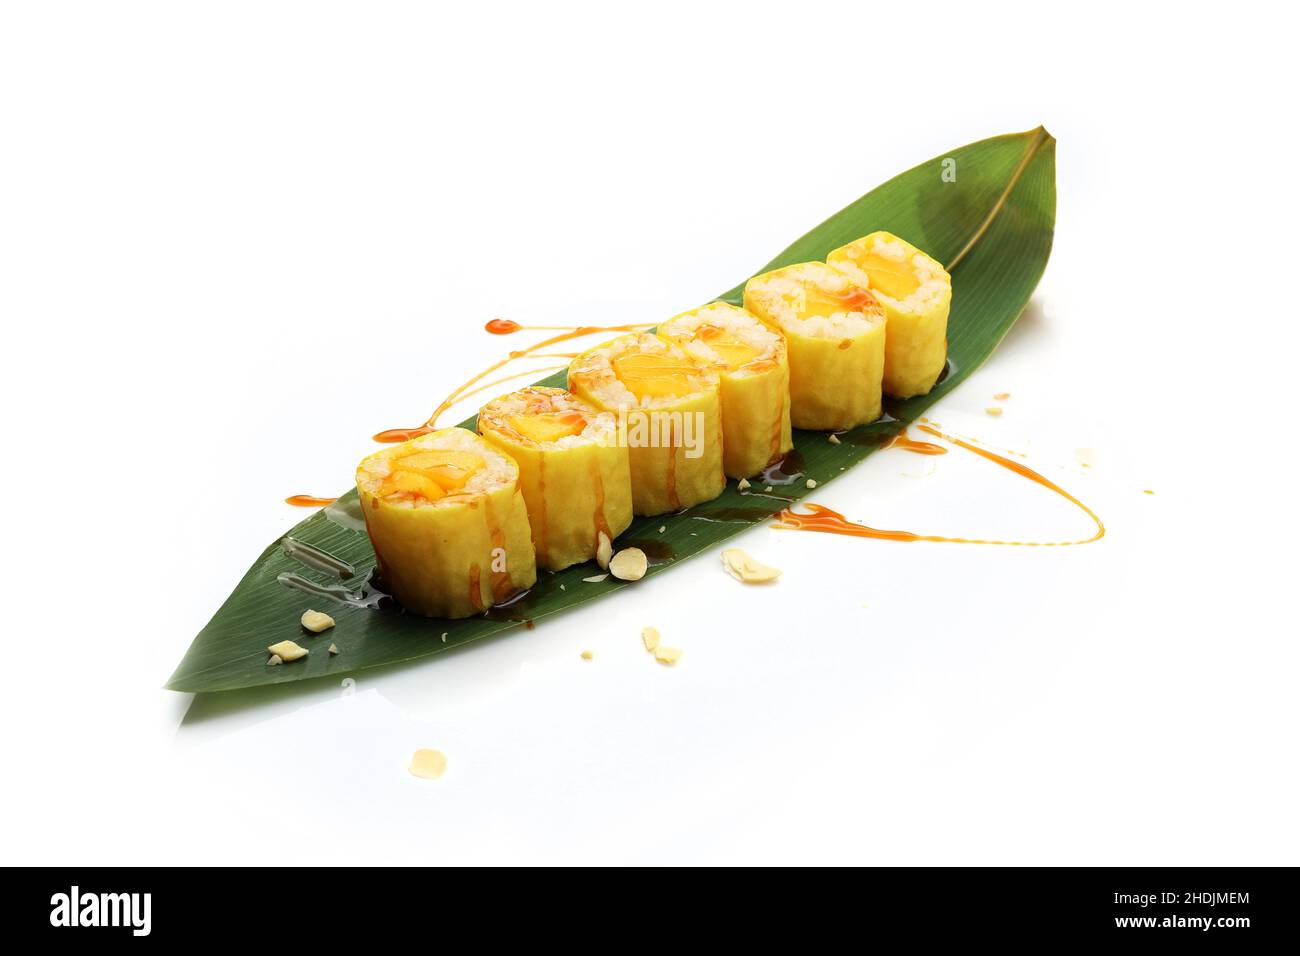 Sushi avec navet jaune et avocat.Petits pains à sushis sur fond blanc.Sushis japonais traditionnels Banque D'Images